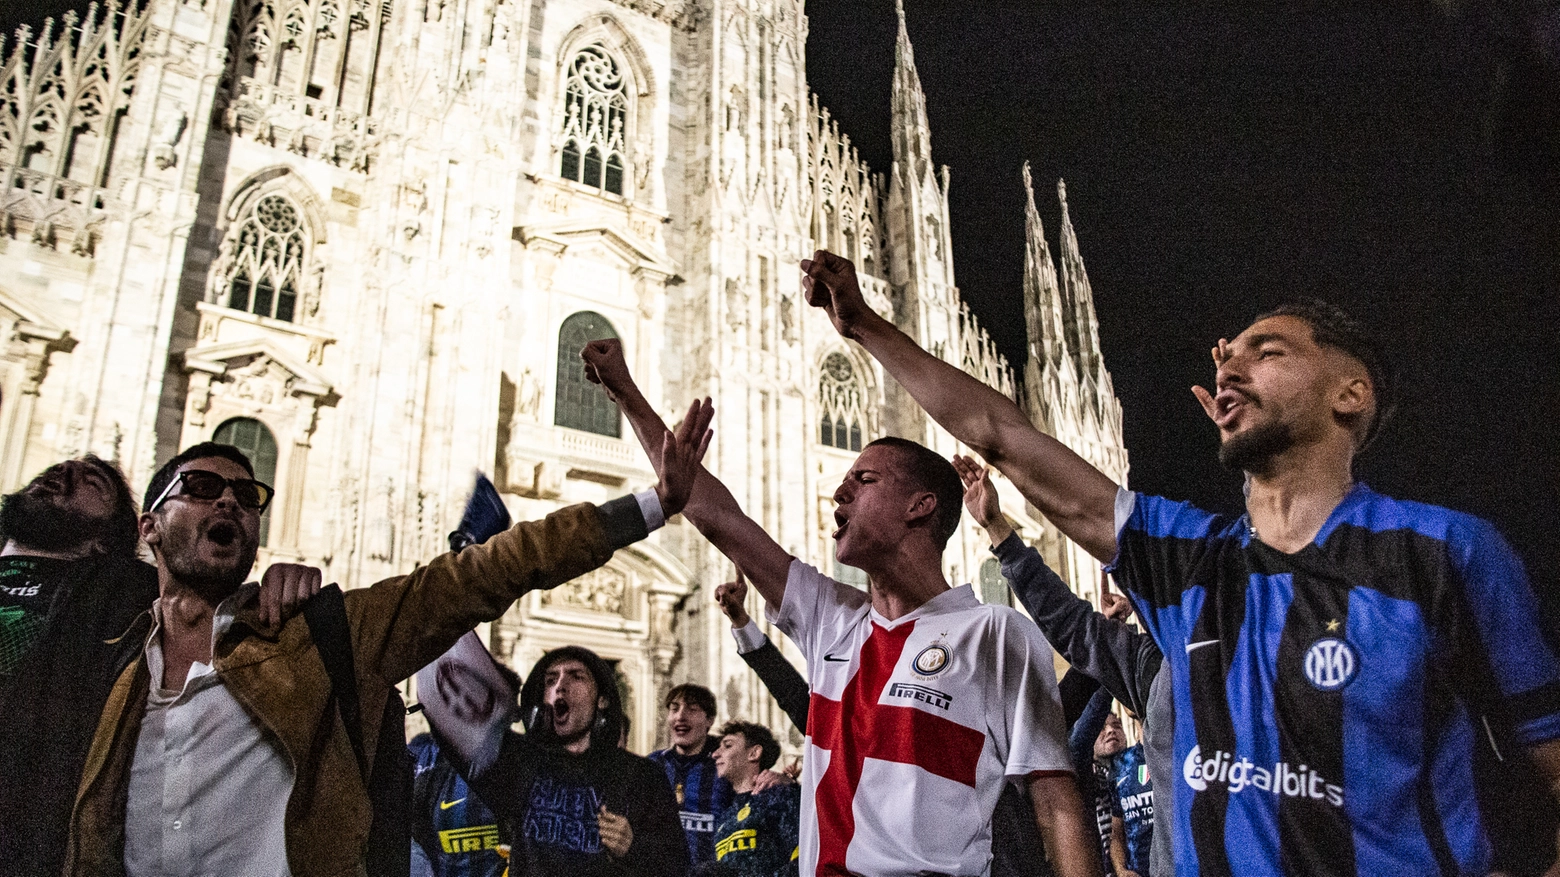 Festeggiamenti in piazza duomo per la vittoria dell'Inter